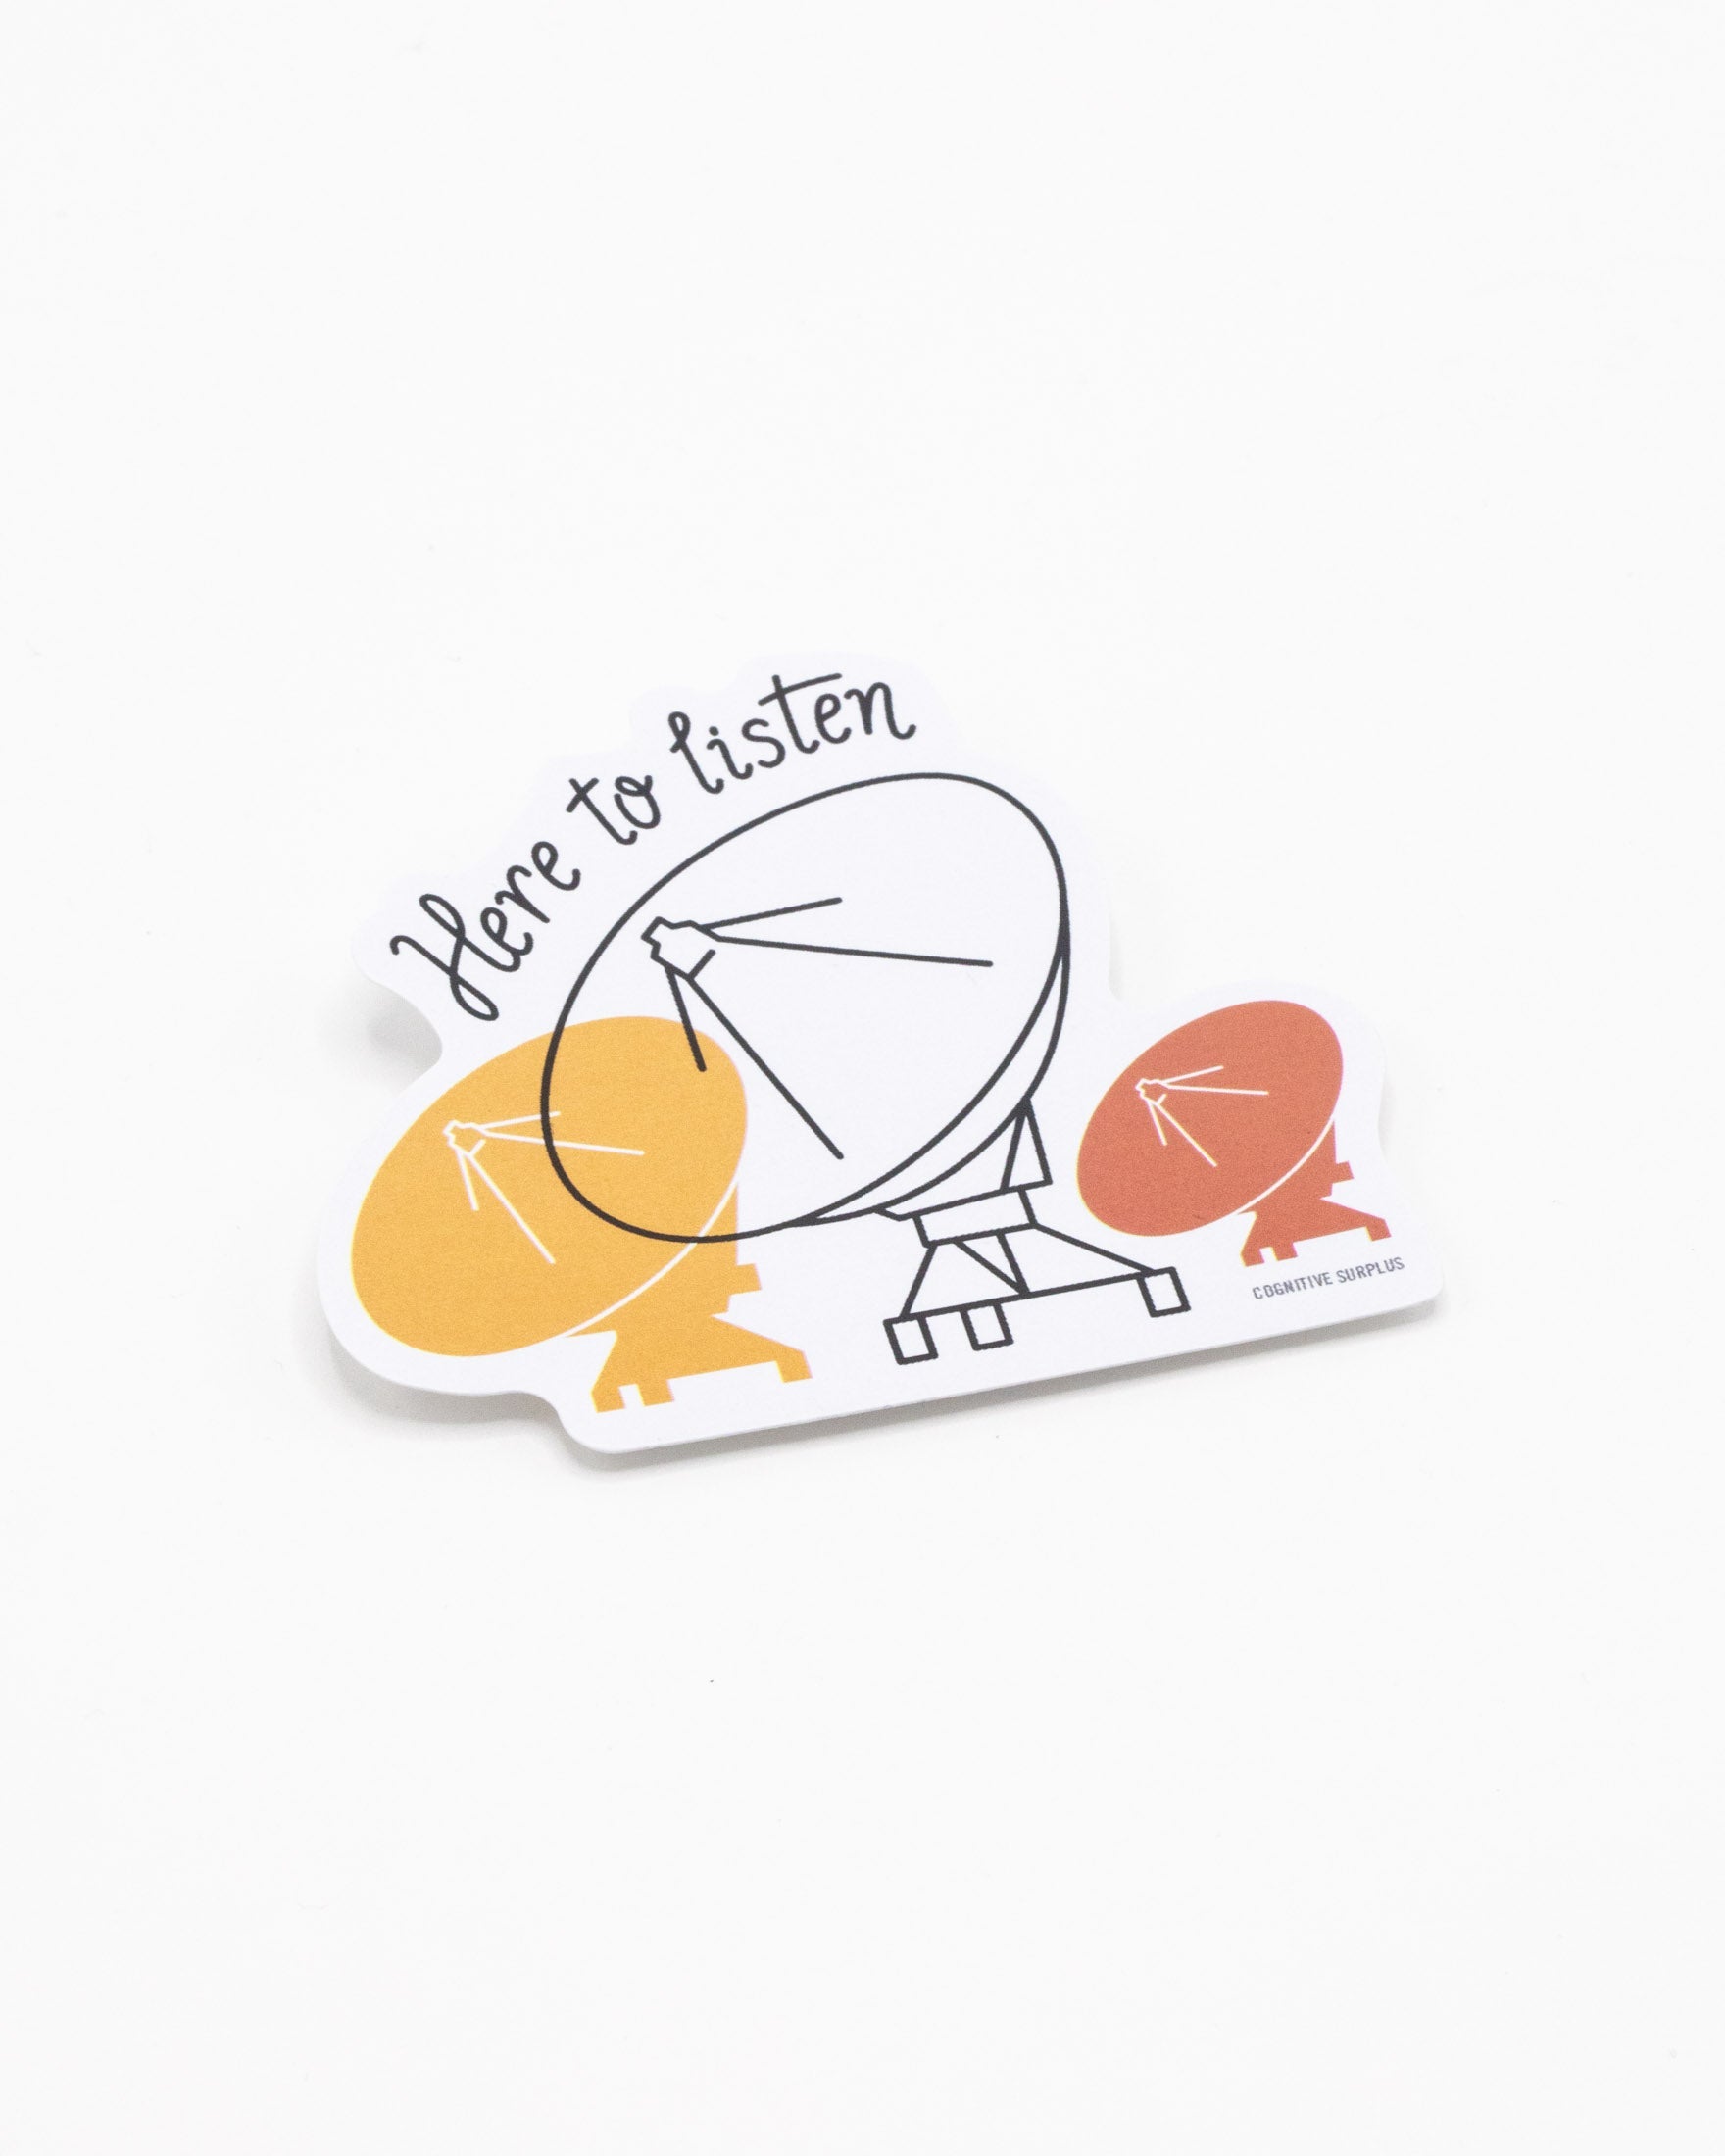 Here to Listen: VLA Sticker